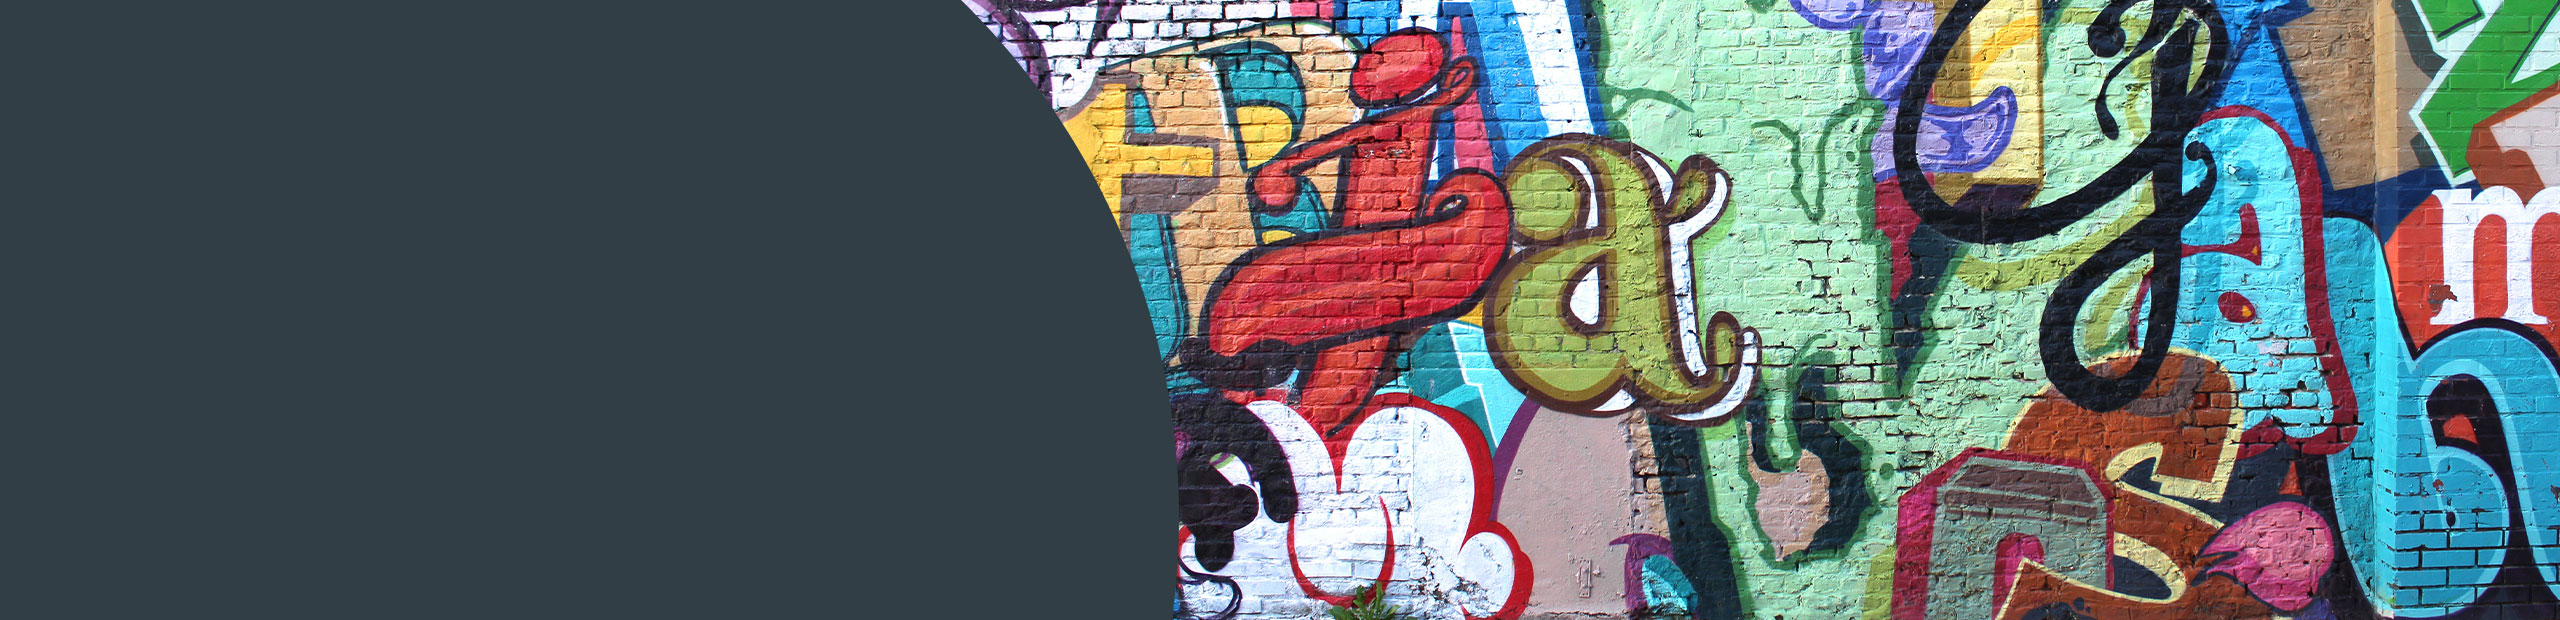 Graffiti Removal Services - Greenwich